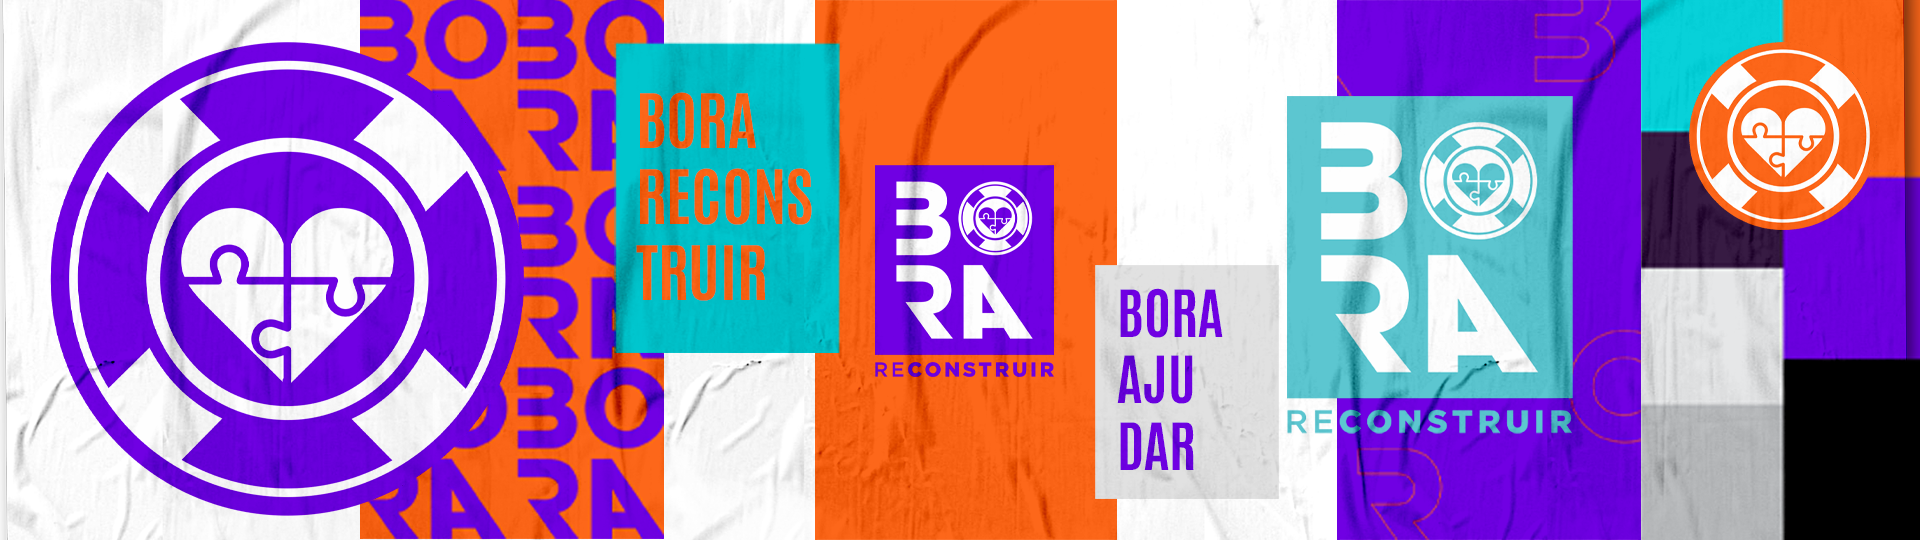 Banner-Bora-01-Reconstruir